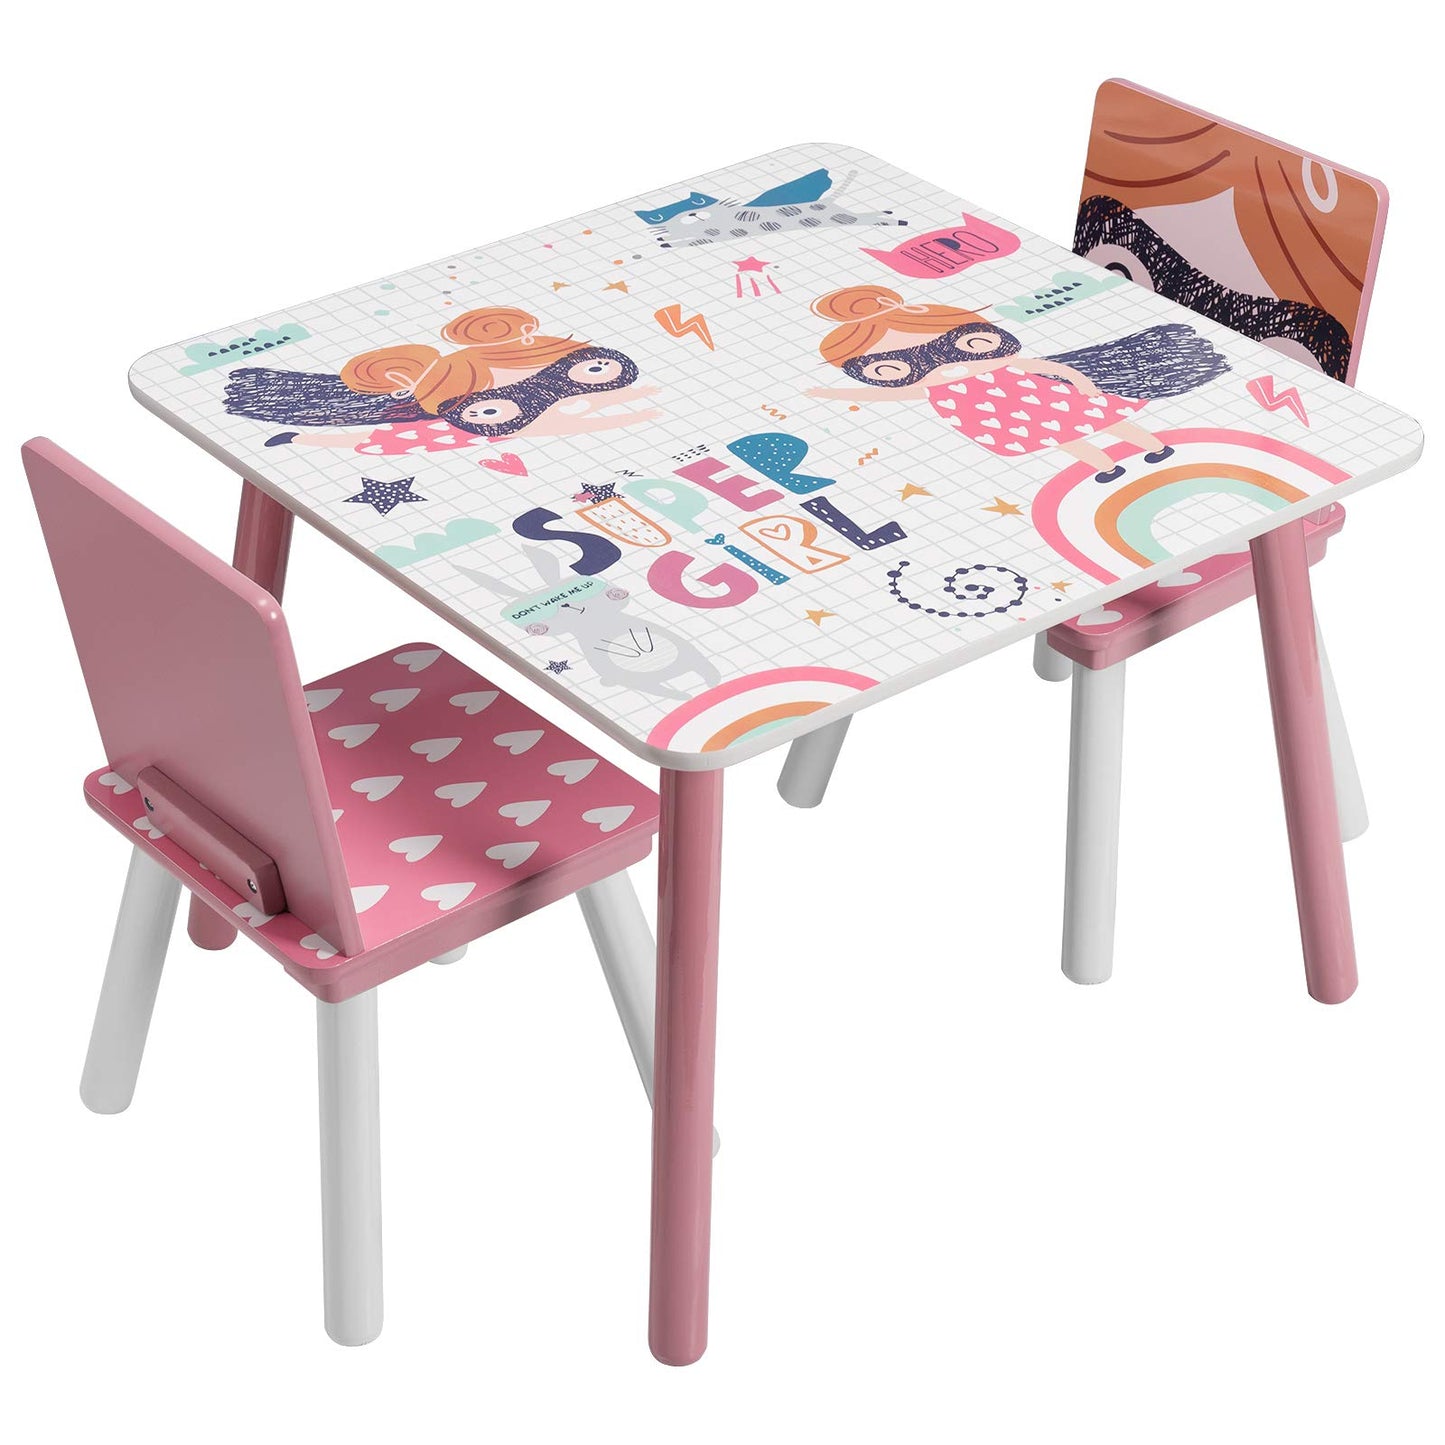 Детска Маса със Столчета, Комплект от Дърво - за Учене, Игра, Хранене, Мебели за Детска Стая, Бяло и Розово - SUPER GIRL